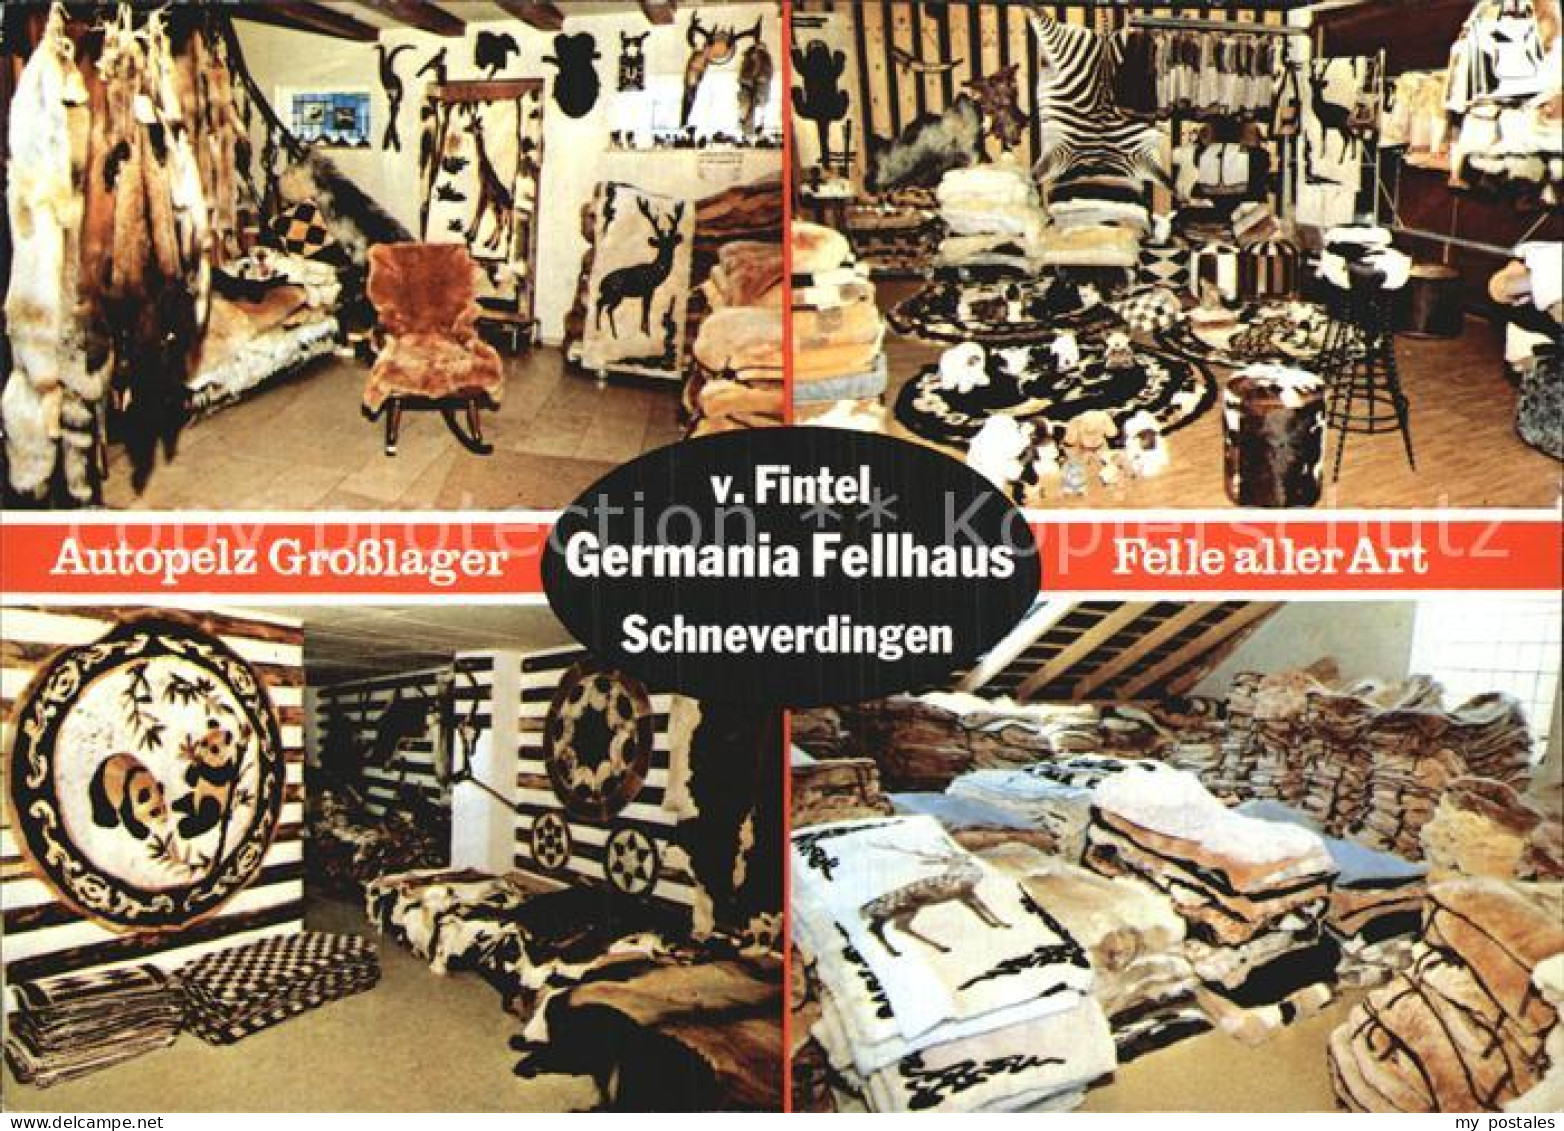 42600066 Schneverdingen Autopelz Grosslager Germania Fellhaus Von Fintel Schneve - Schneverdingen